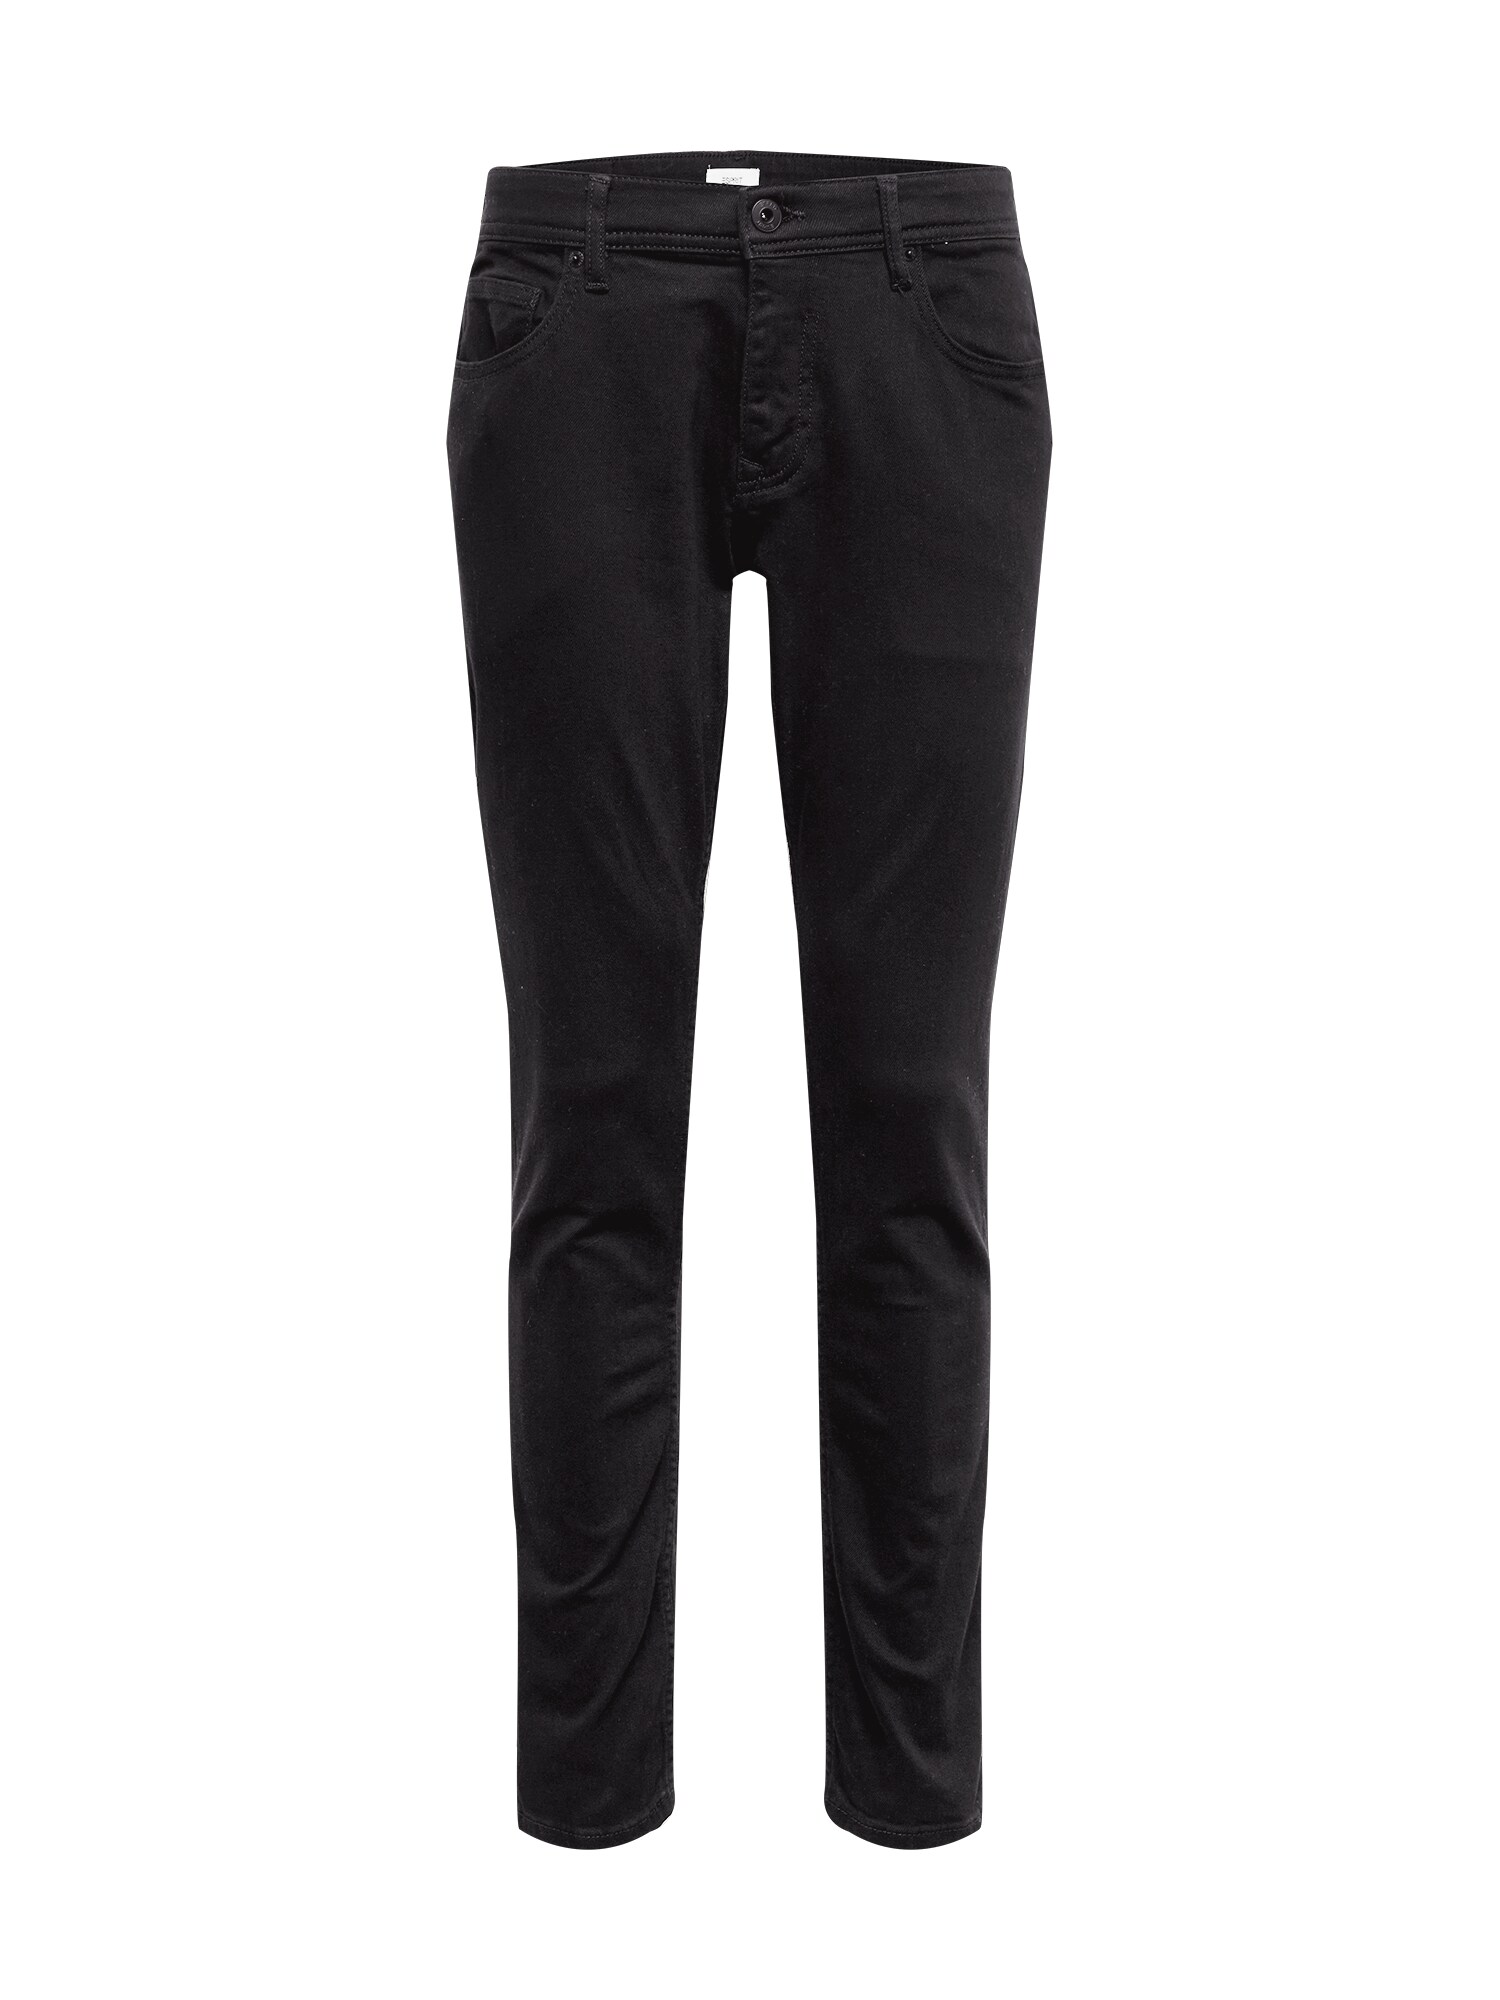 ESPRIT Džinsai  juodo džinso spalva